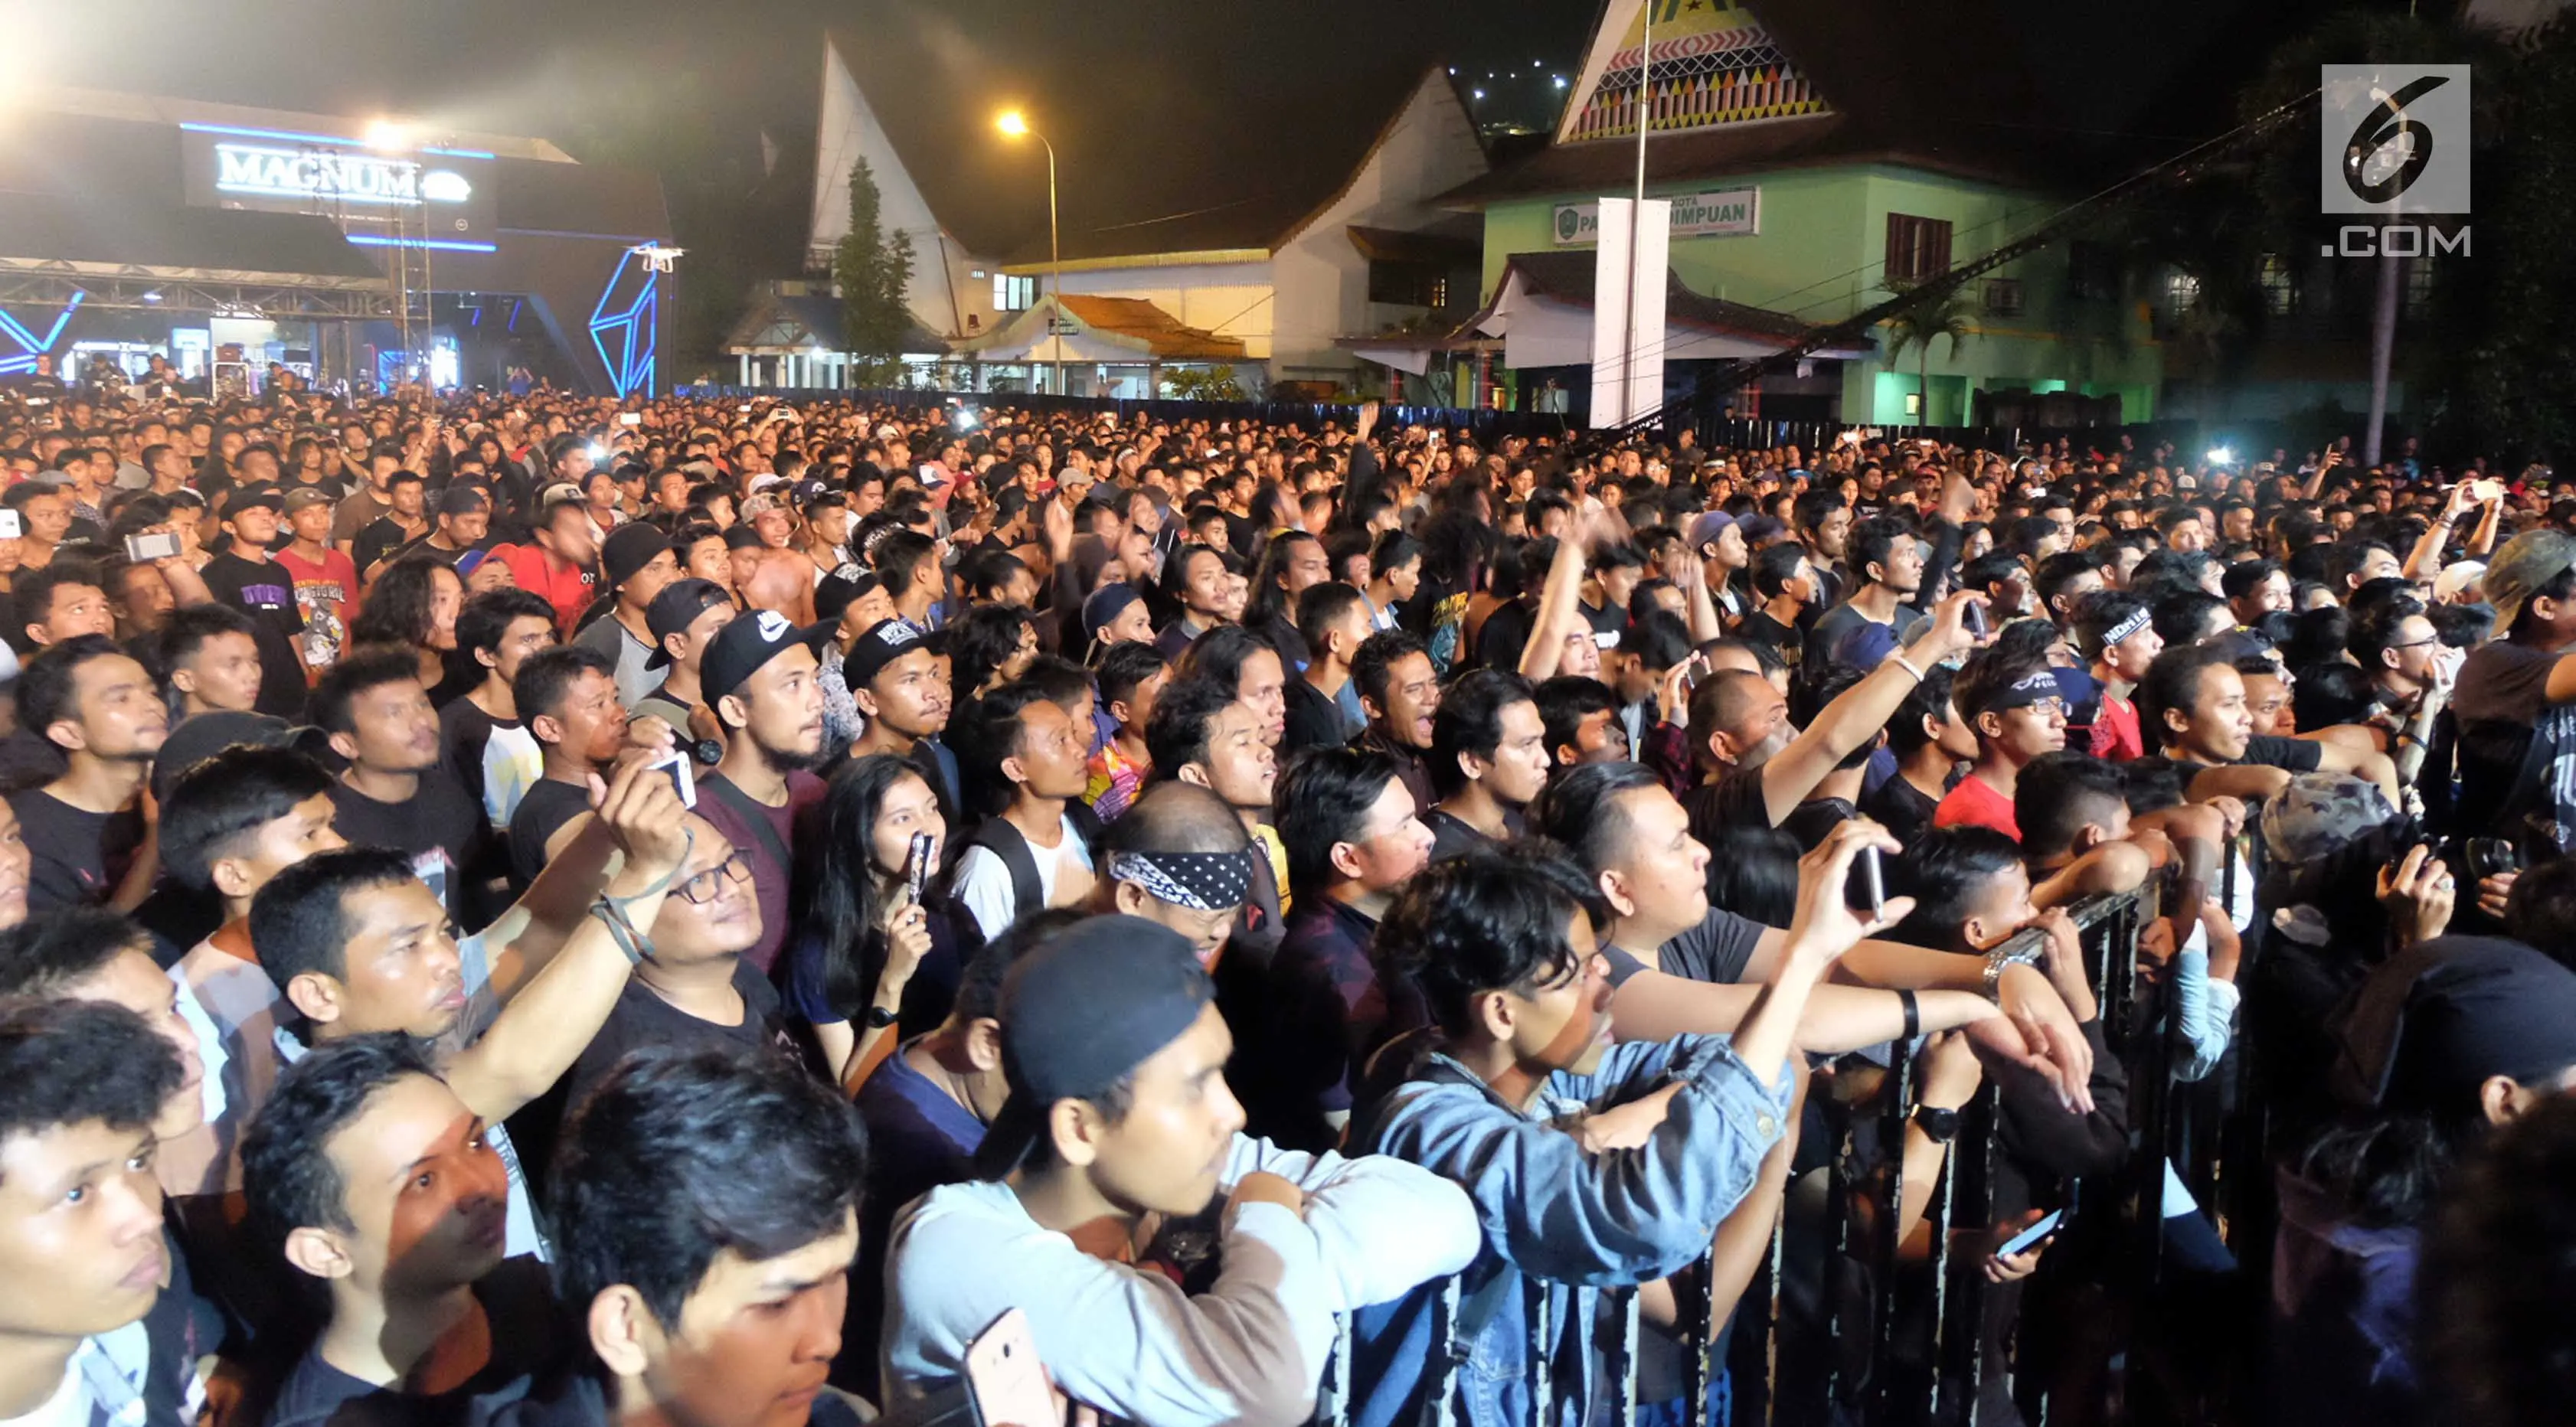 Ribuan orang antusias menyaksikan aksi Sepultura di Magnitude Medan Northblast 2017, Medan, Sabtu (9/12/2017) malam. (Reza Efendi/Liputan6.com)